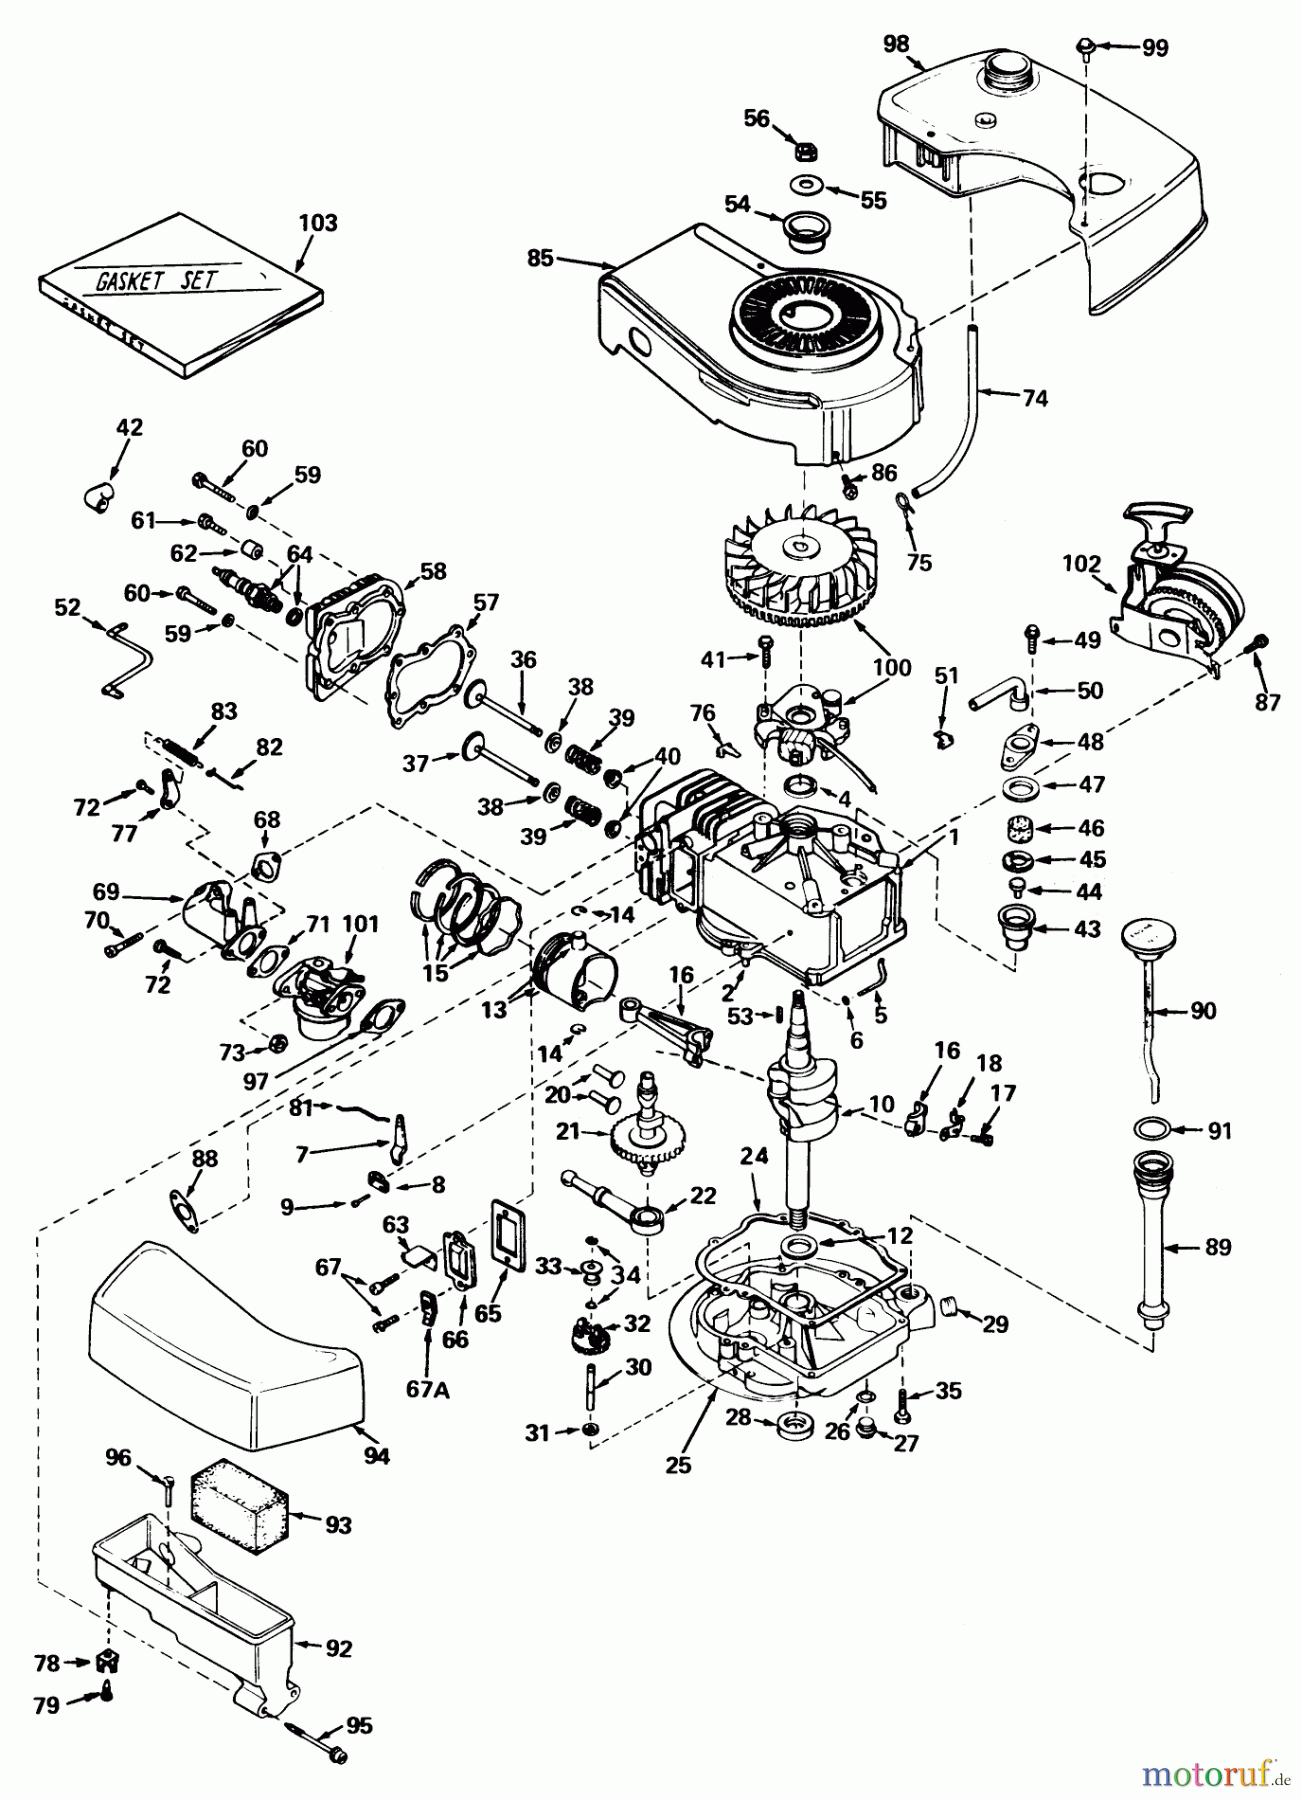  Toro Neu Mowers, Walk-Behind Seite 1 20550 - Toro Lawnmower, 1974 (4000001-4999999) ENGINE TECUMSEH MODEL NO. TNT 120-12002 (MOWER MODEL NOS. 20440 AND 20550)